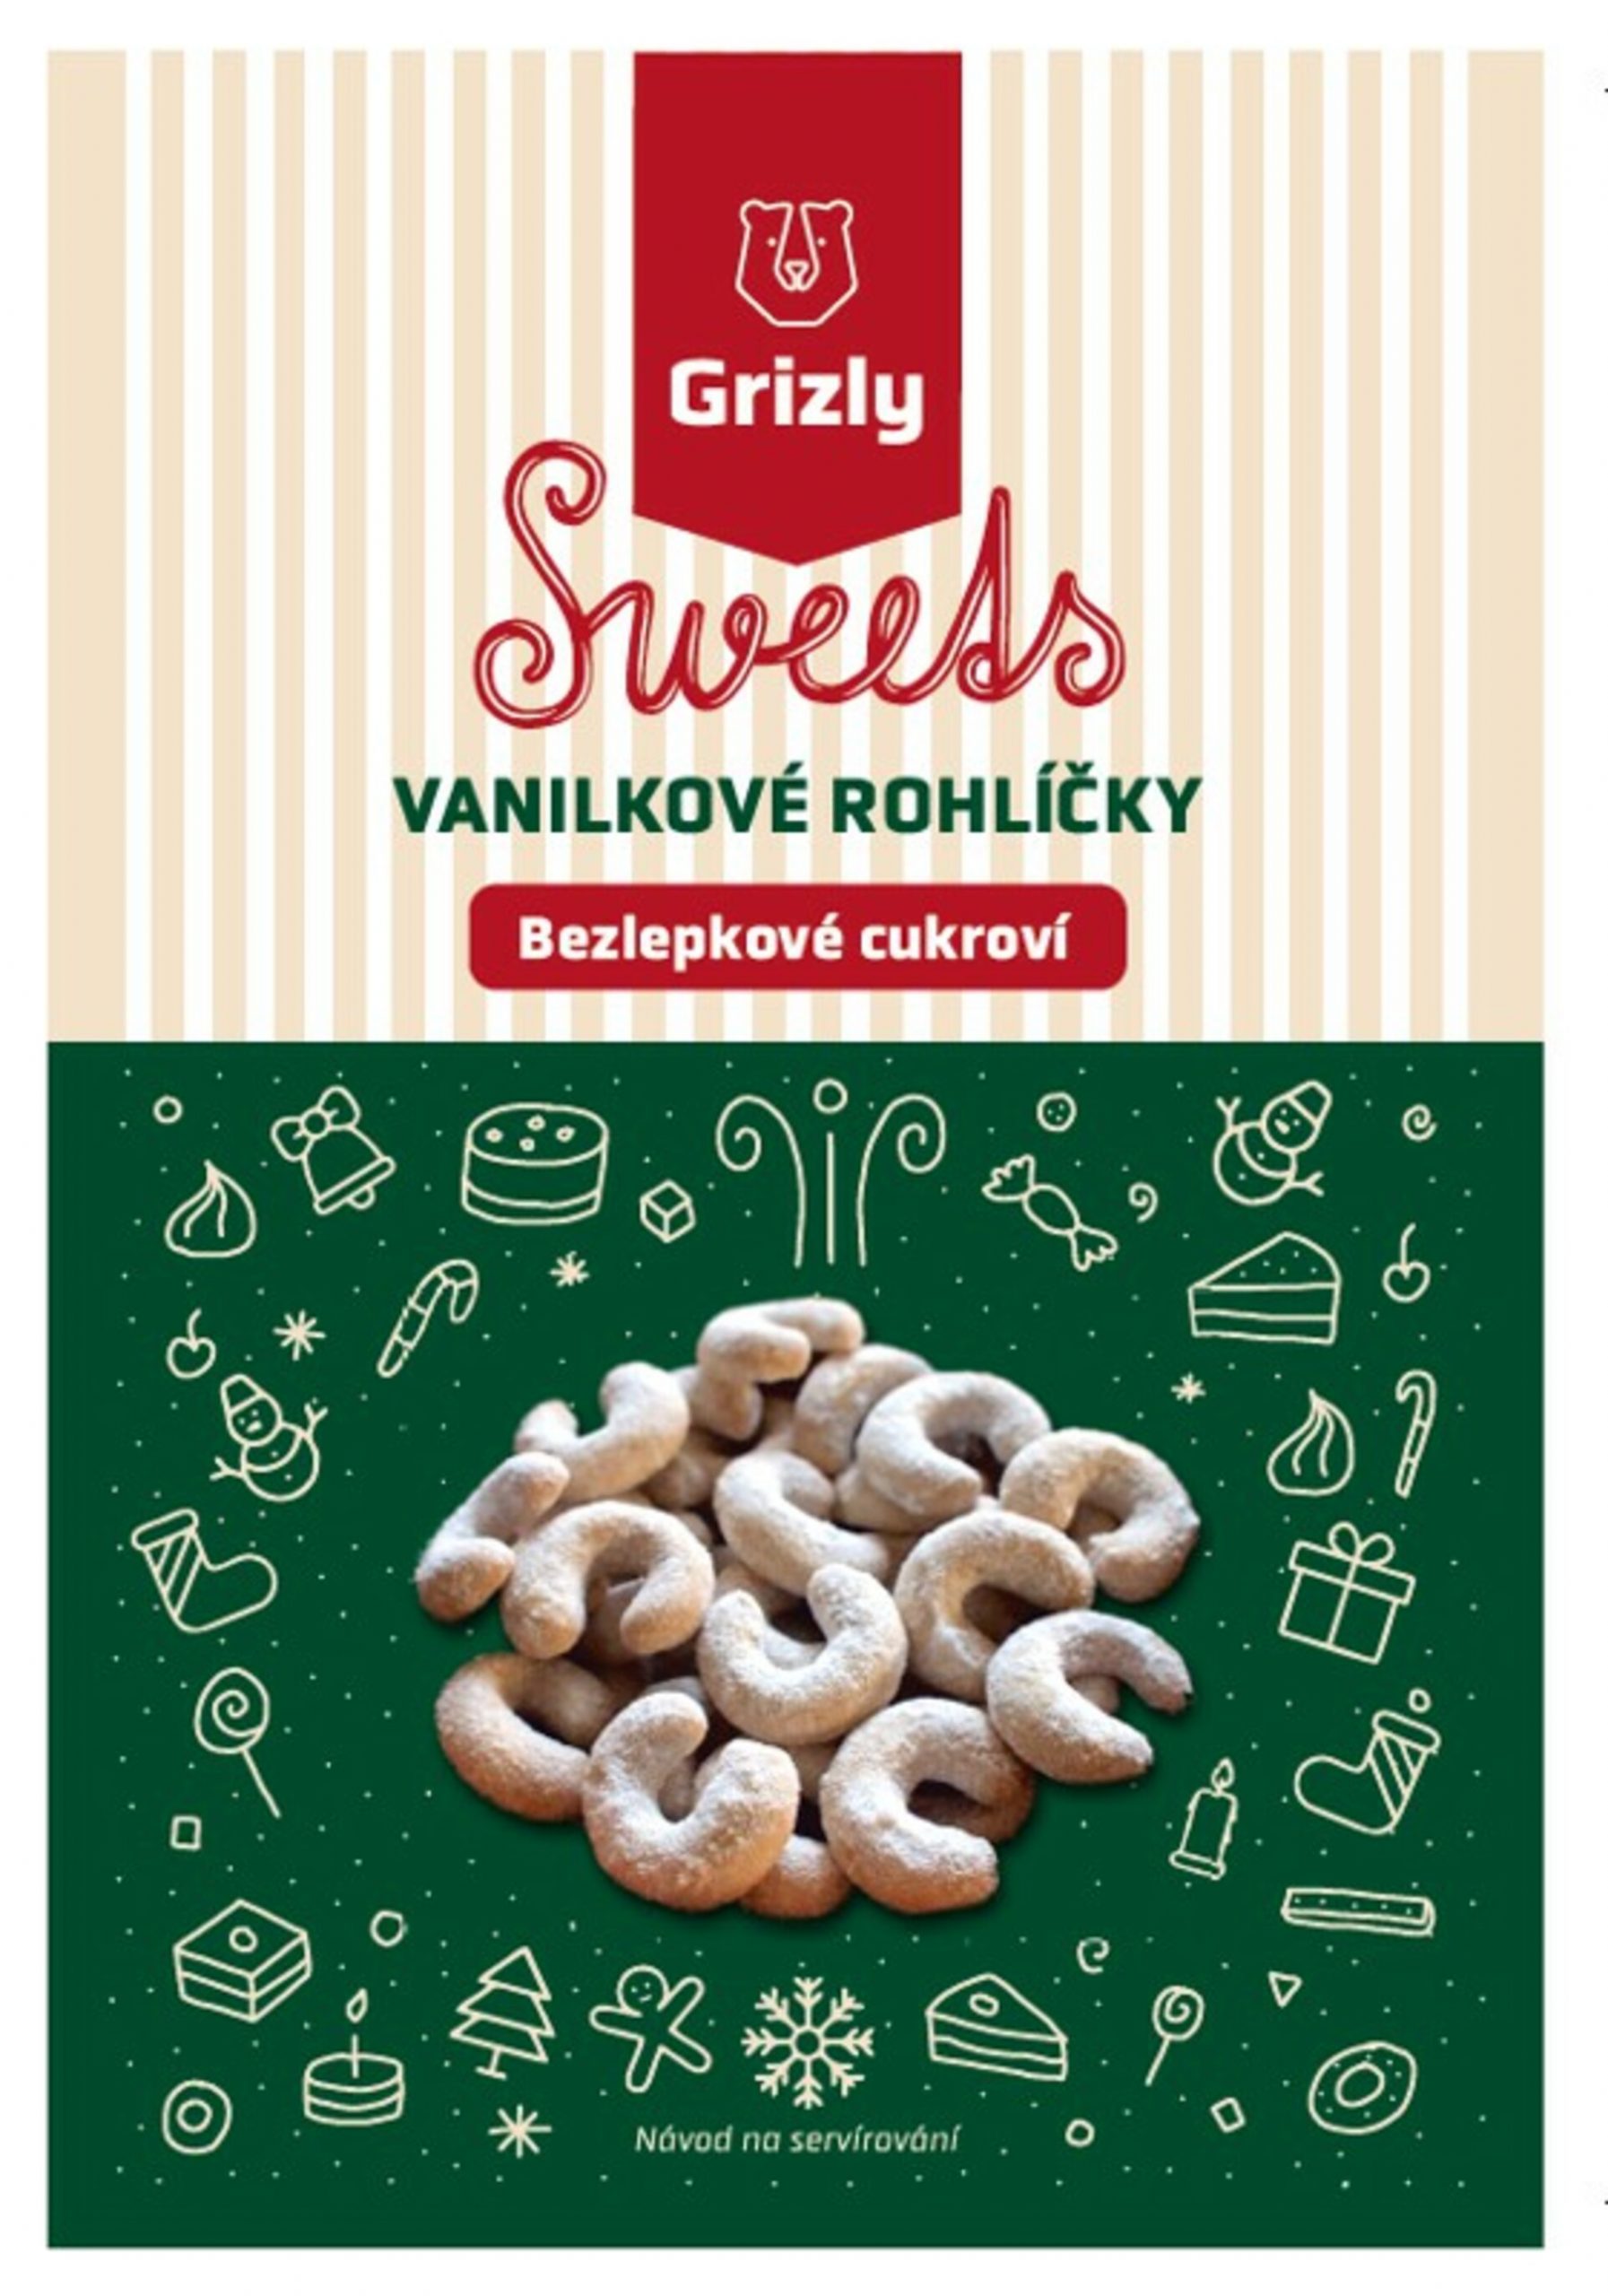 GRIZLY Sweets Směs na vanilkové rohlíčky bezlepkové 440 g - Duplikovaný